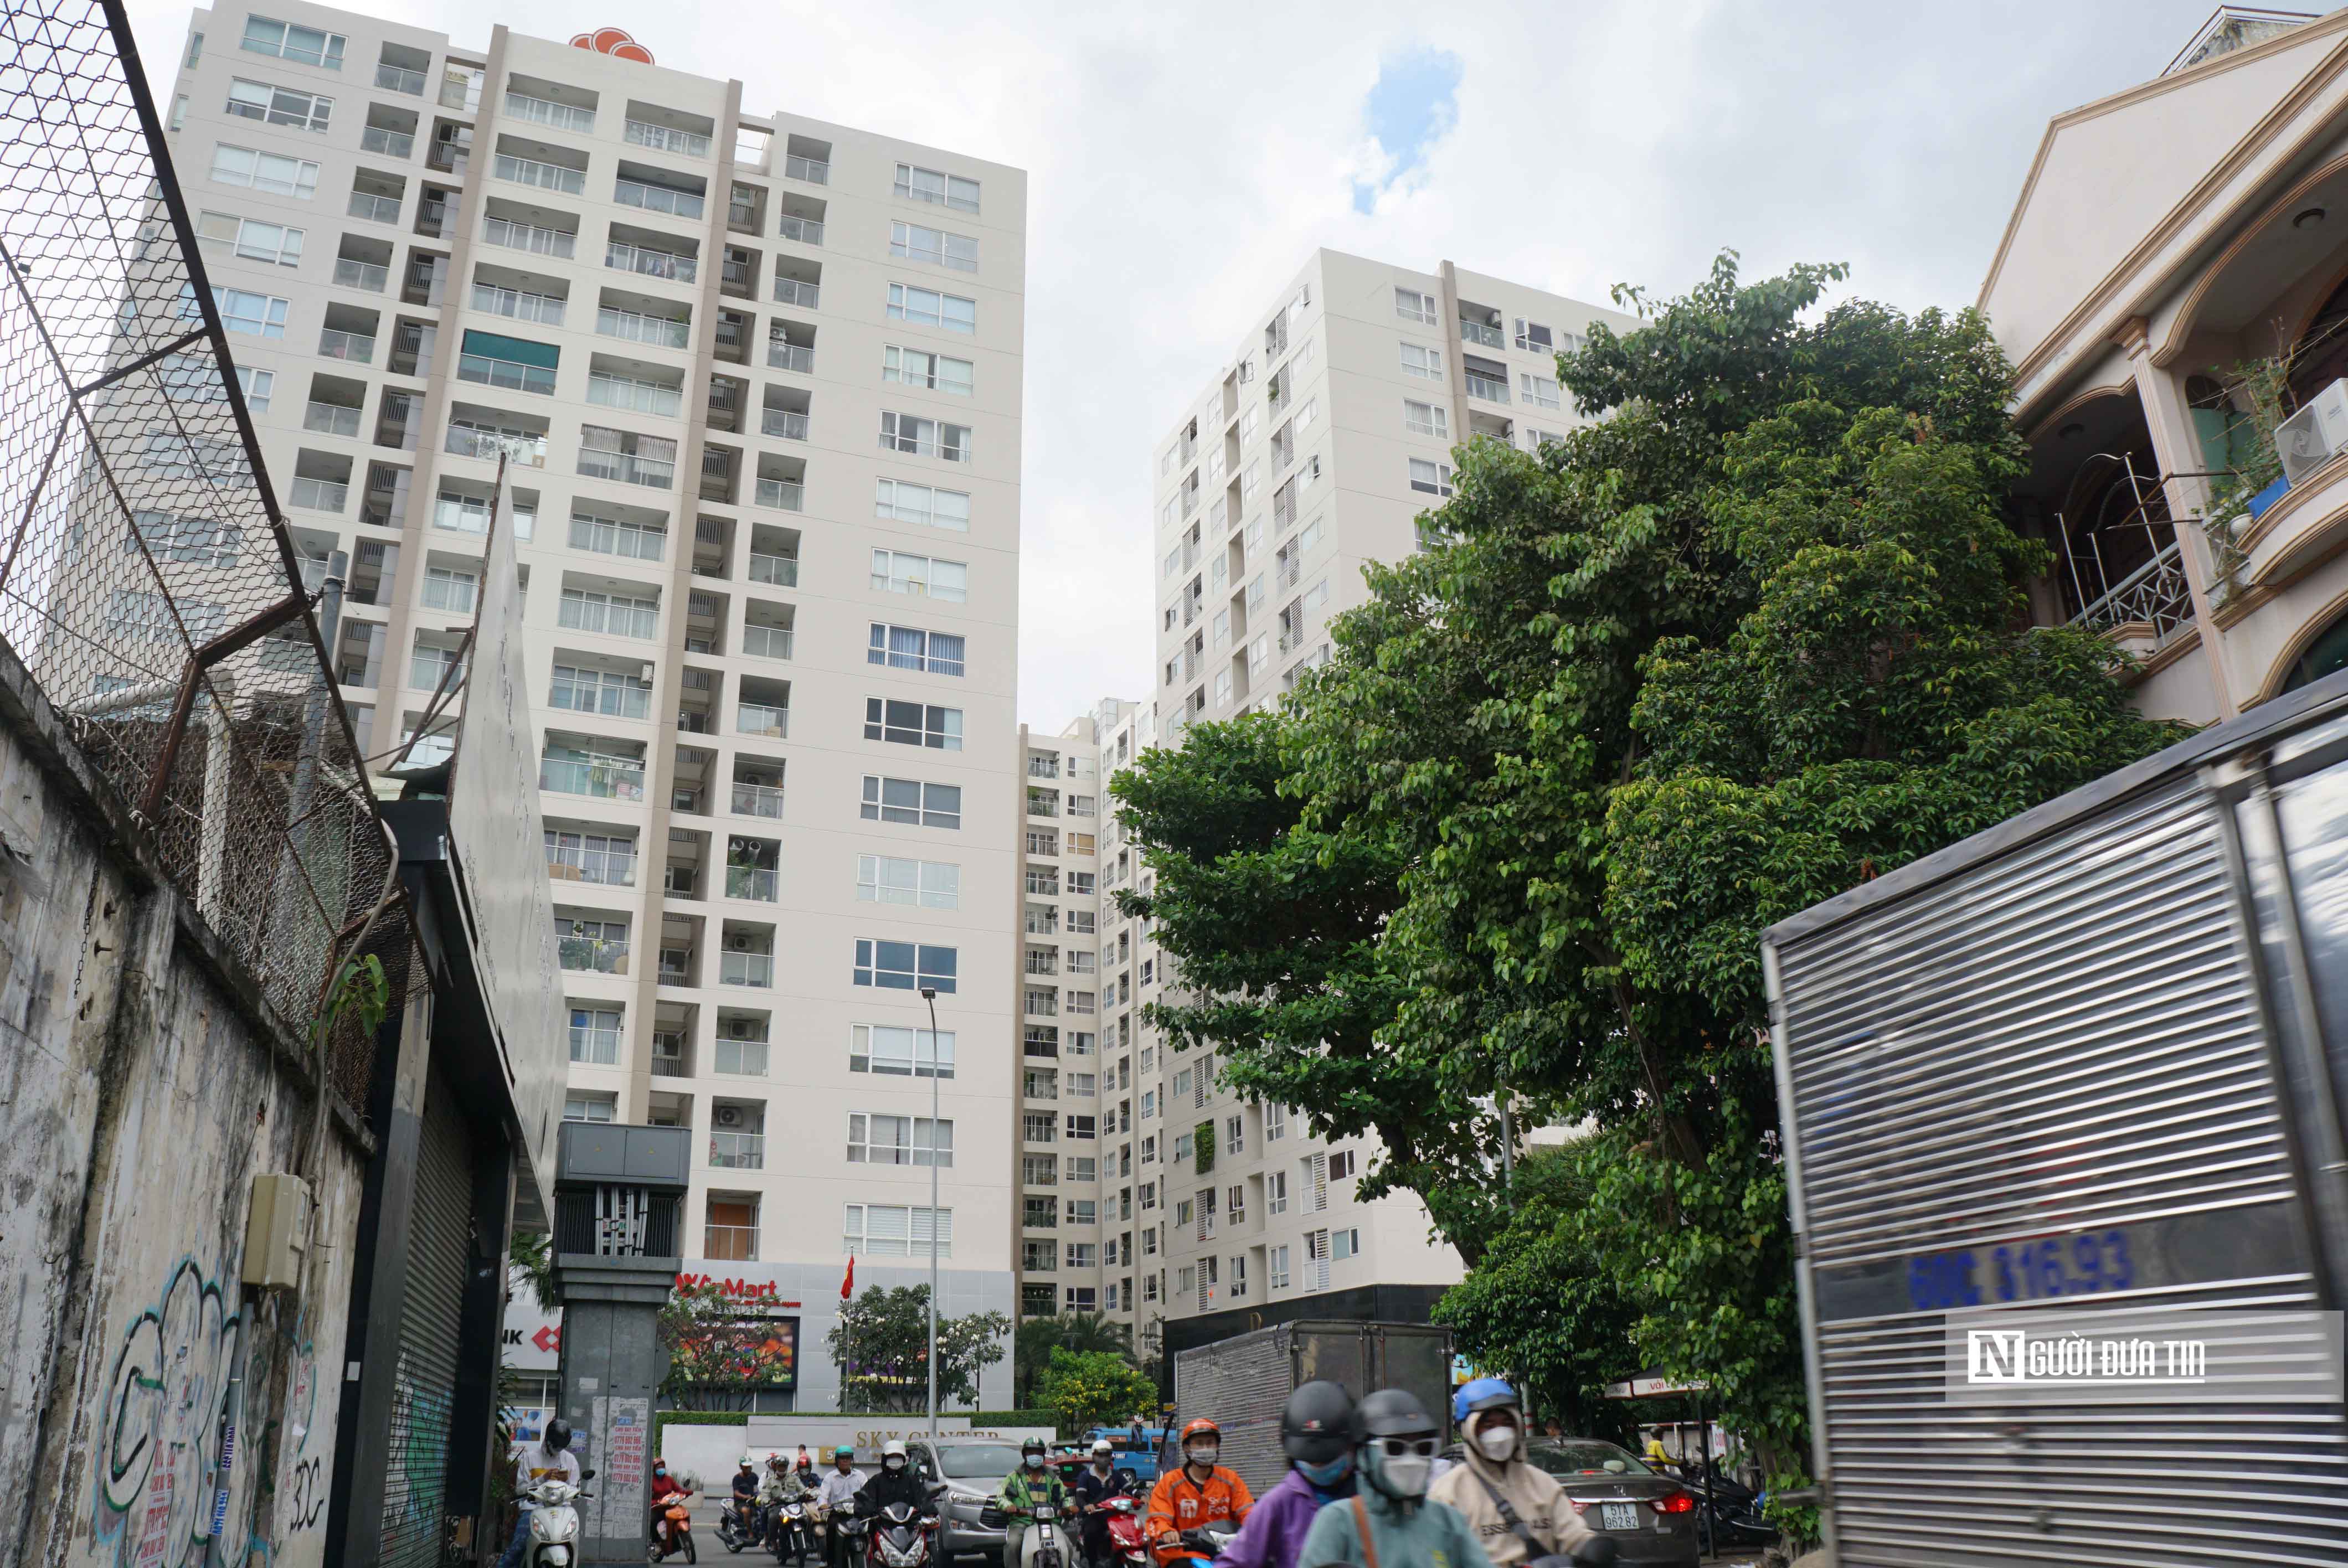 Những tuyến đường “dày đặc” cao ốc, chung cư tại Tp.HCM Bài 4: Nhiều tuyến đường có nguy cơ “qúa tải” do chung cư cao tầng-1